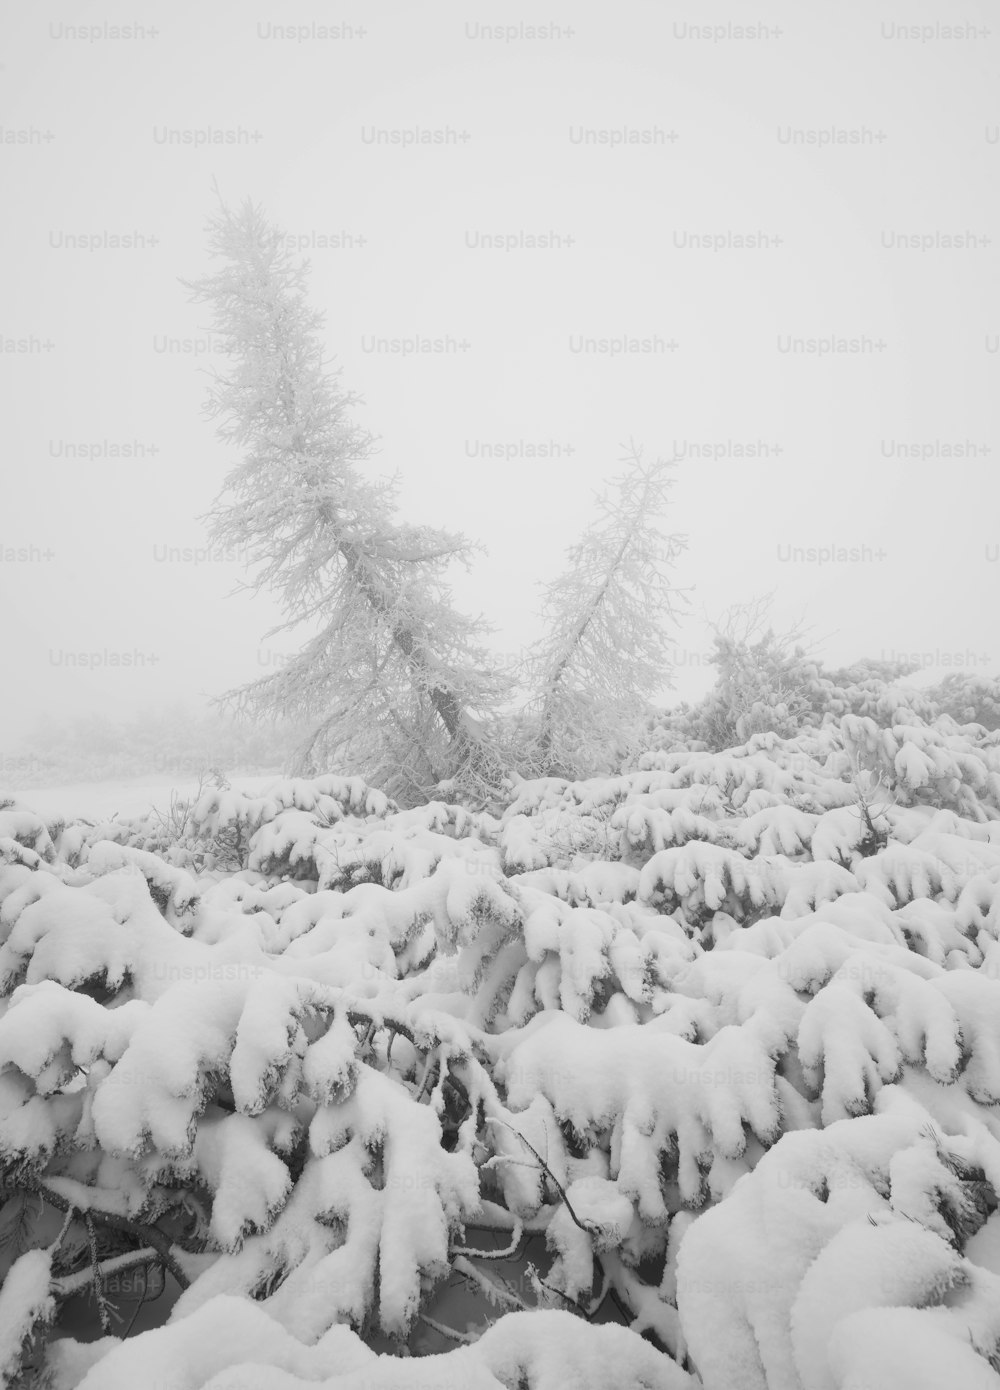 Un campo cubierto de nieve con árboles al fondo